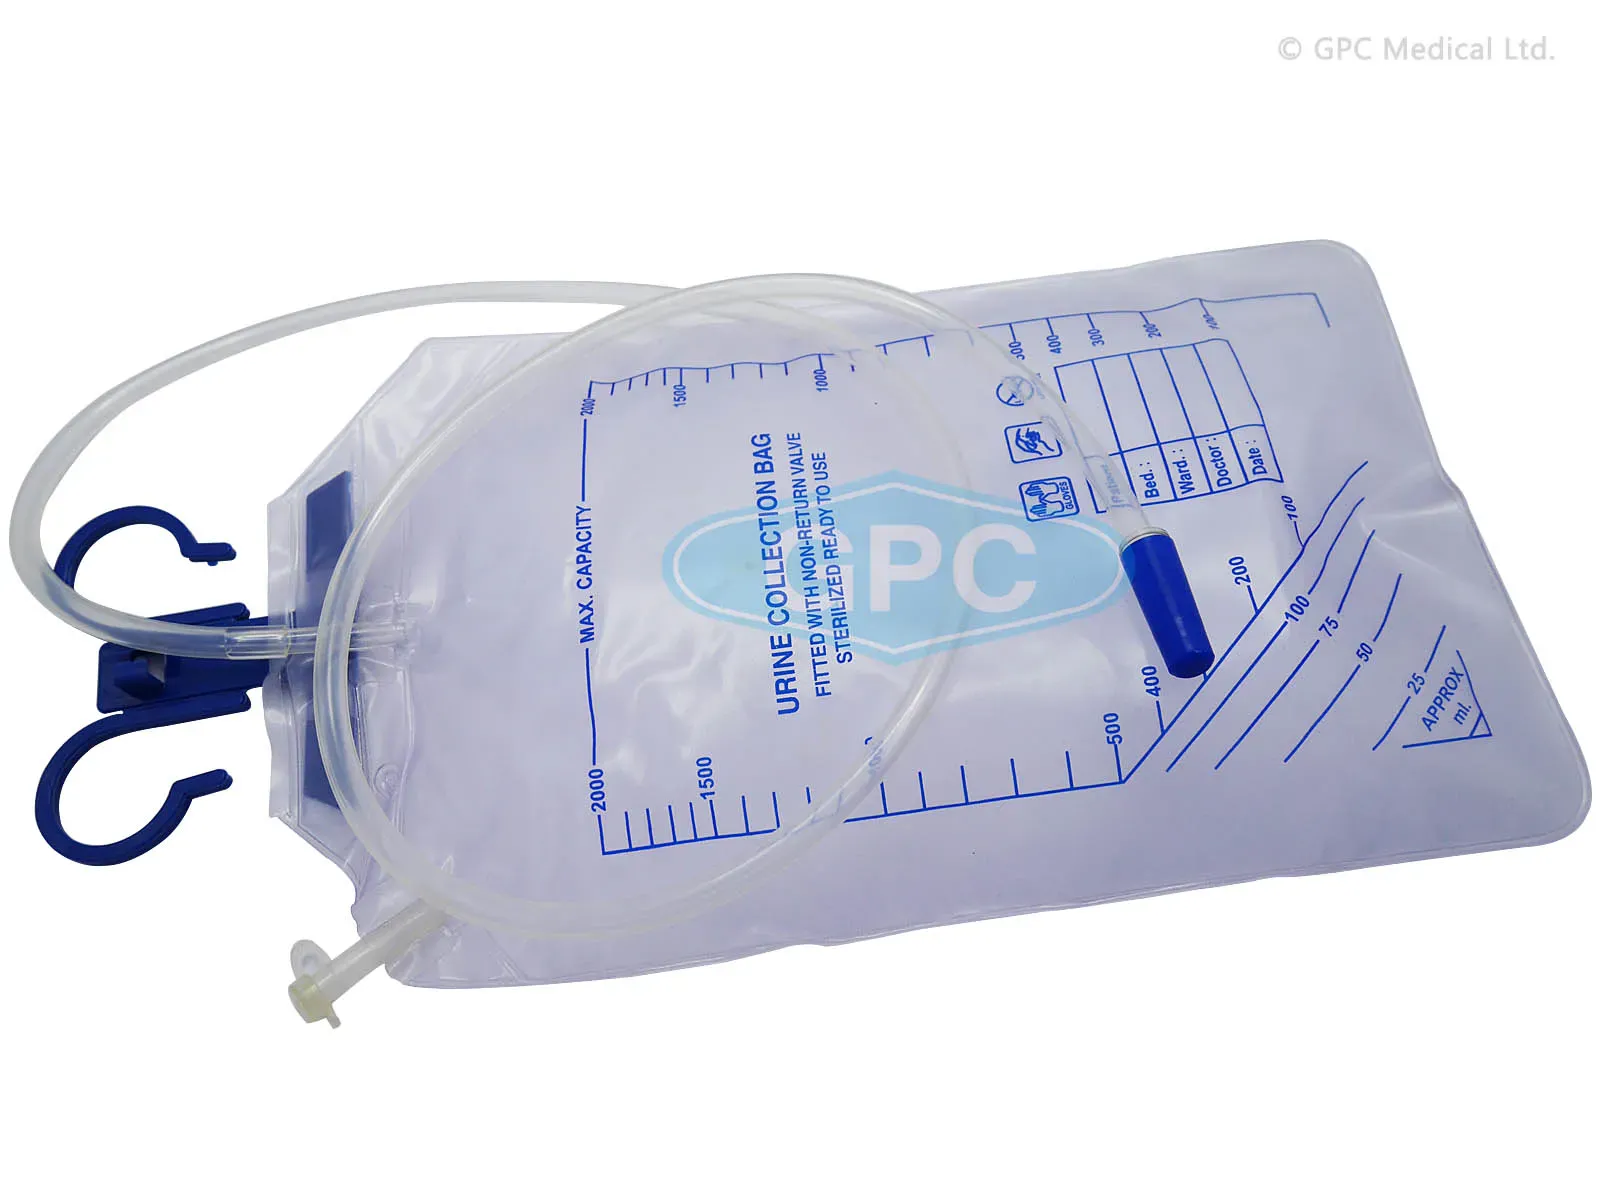 E&E Urine Leg Bag Holder, Sleeve Type - Catheter Bag Sleeve